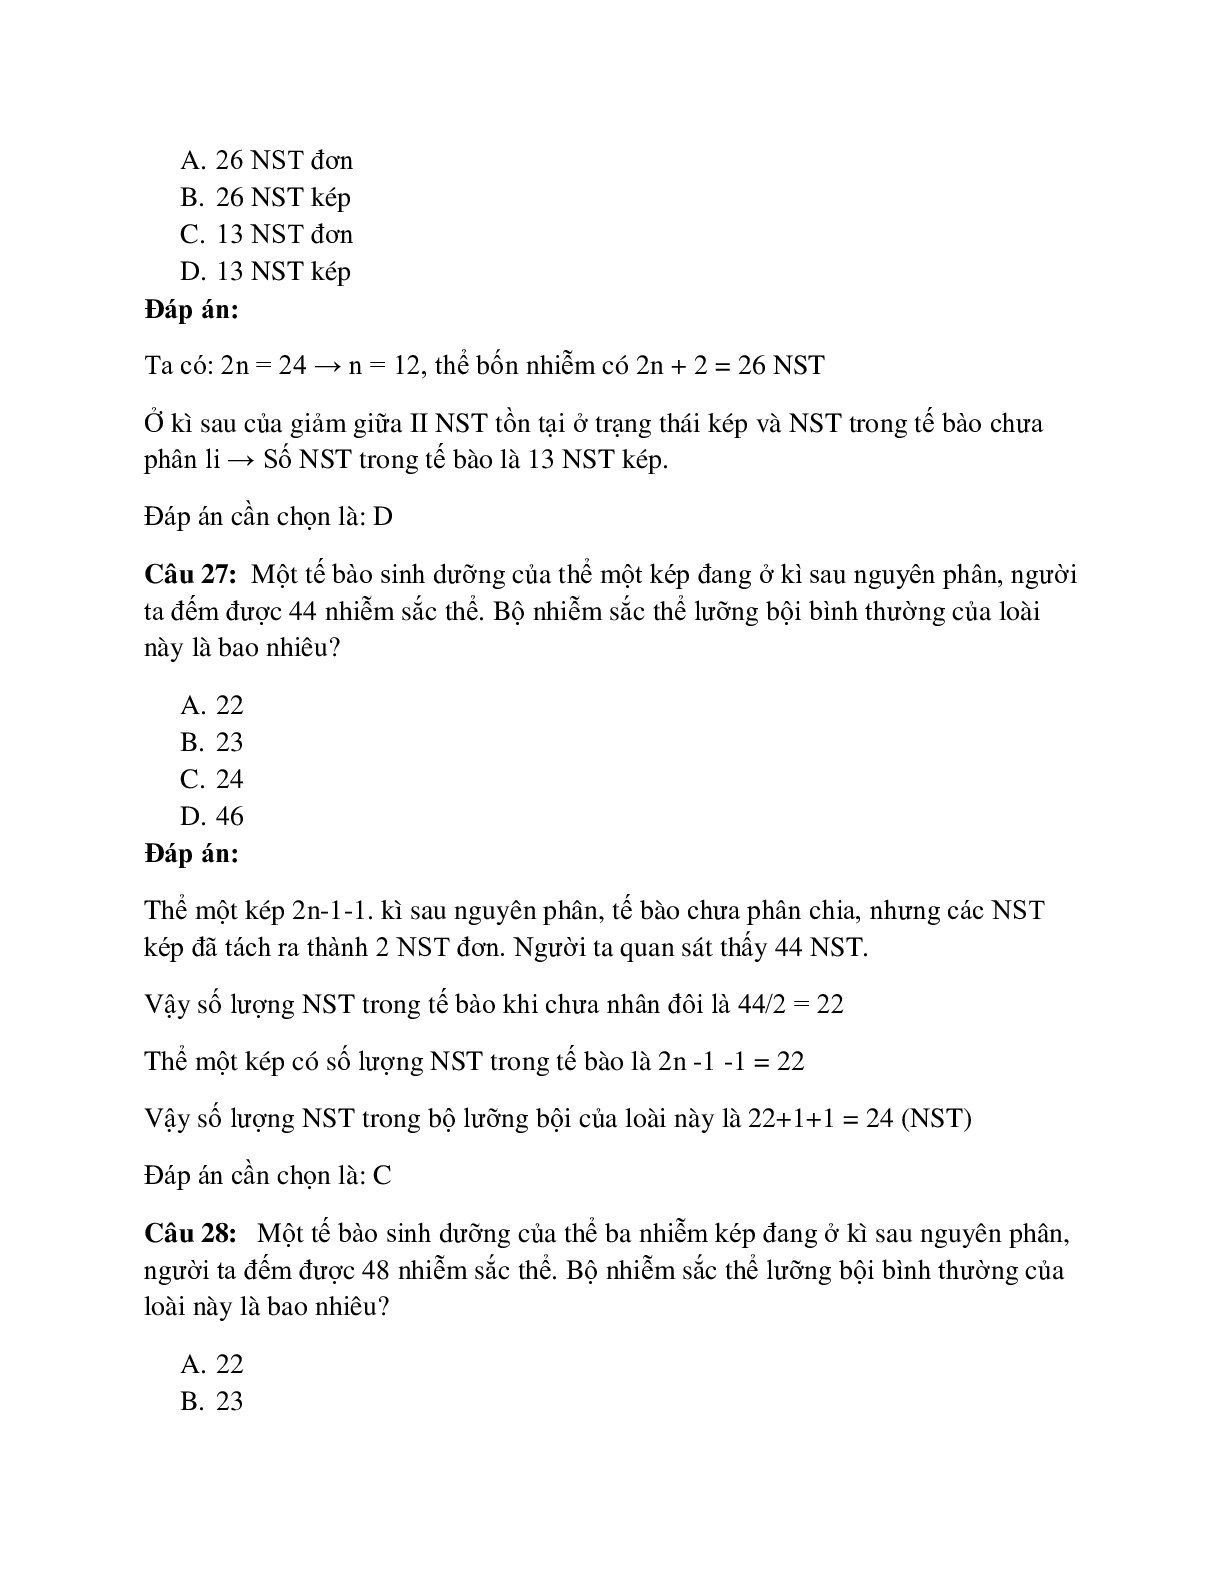 59 câu Trắc nghiệm Sinh học lớp 12 Bài 6 có đáp án 2023: Đột biến số lượng NST (trang 10)